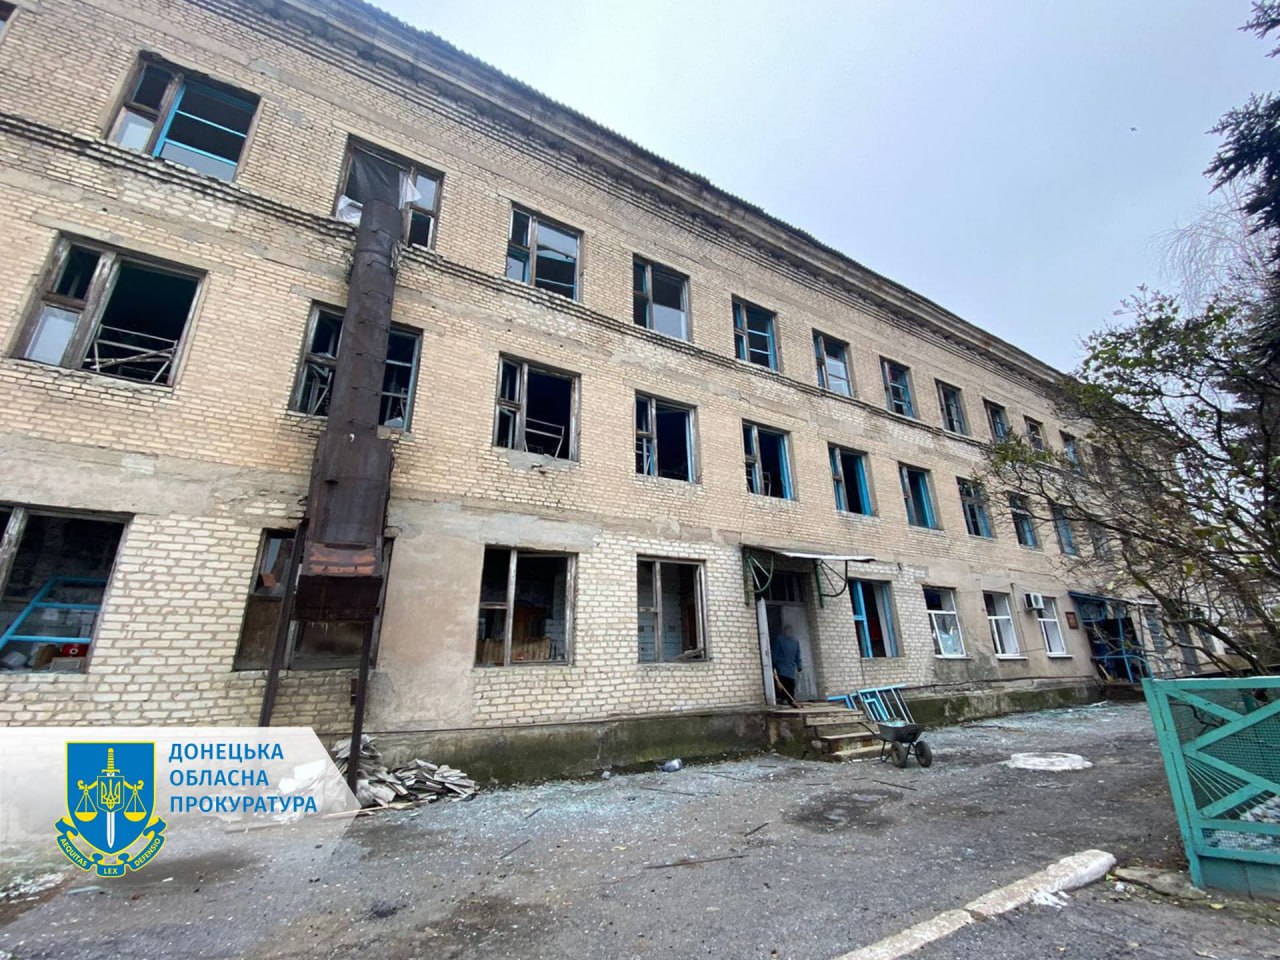 ❗️Рашисты ударили по больнице в Селидово Донецкой области